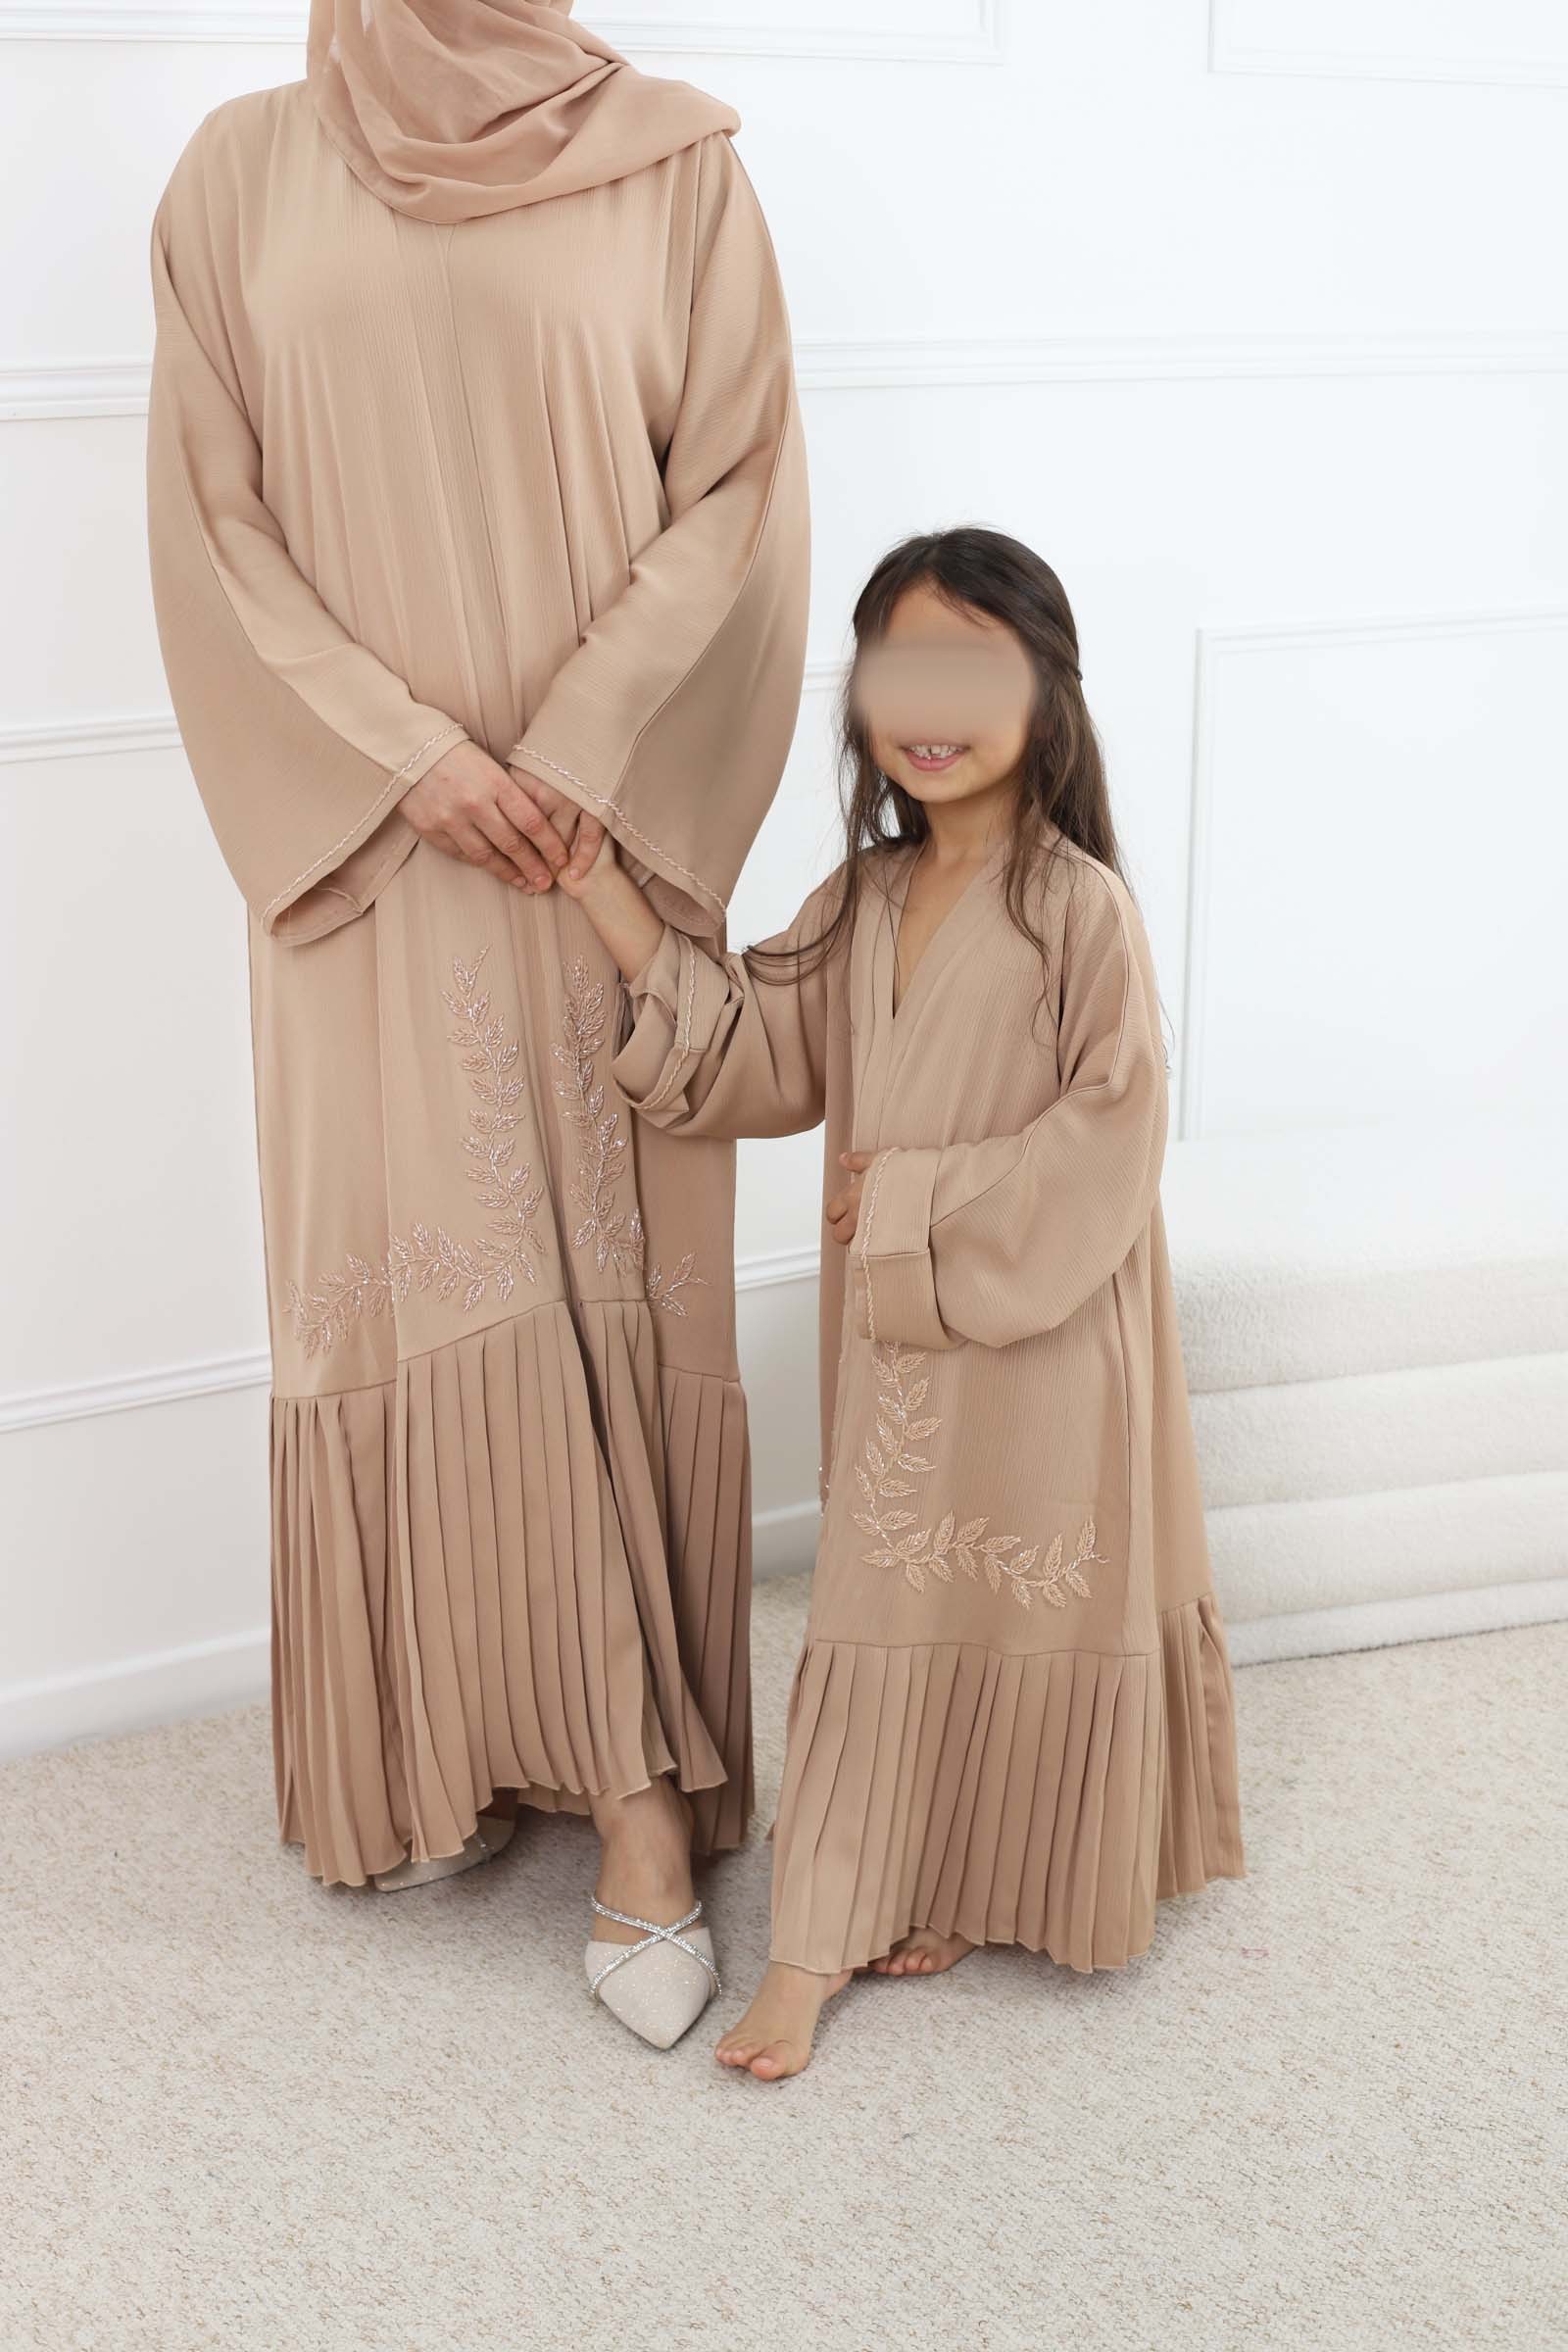 Abaya mother-daughter dubai, child outfit